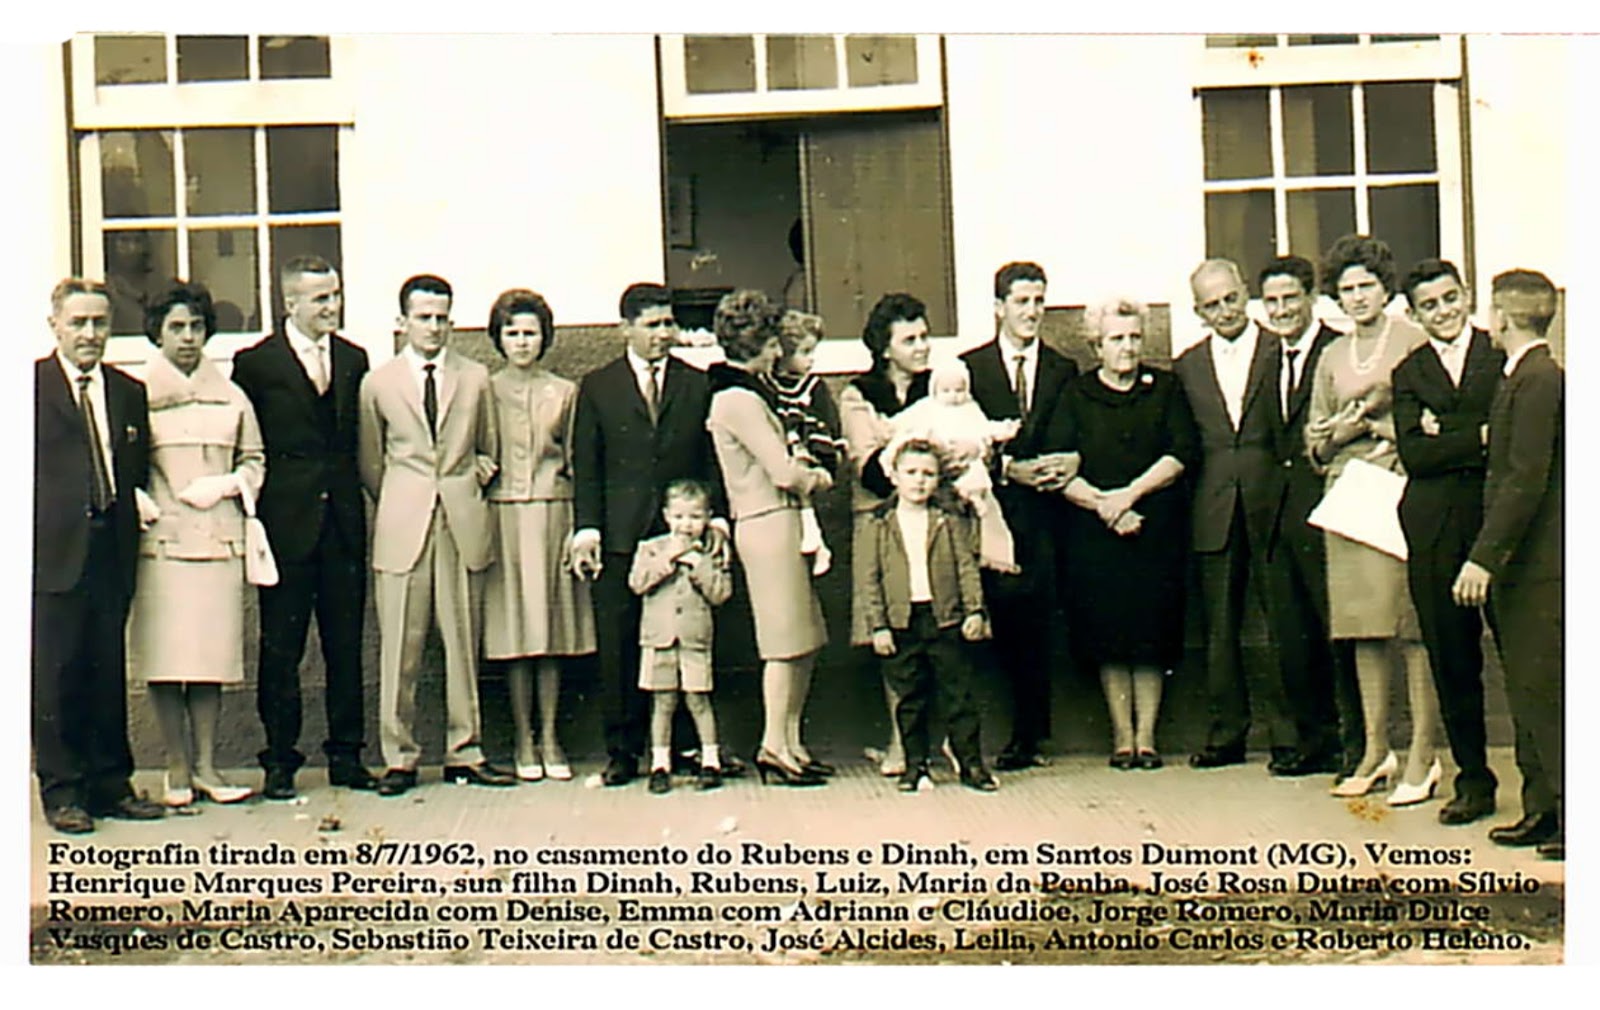 Laranjal Paulista, São Paulo, Brasil - Genealogia - FamilySearch Wiki